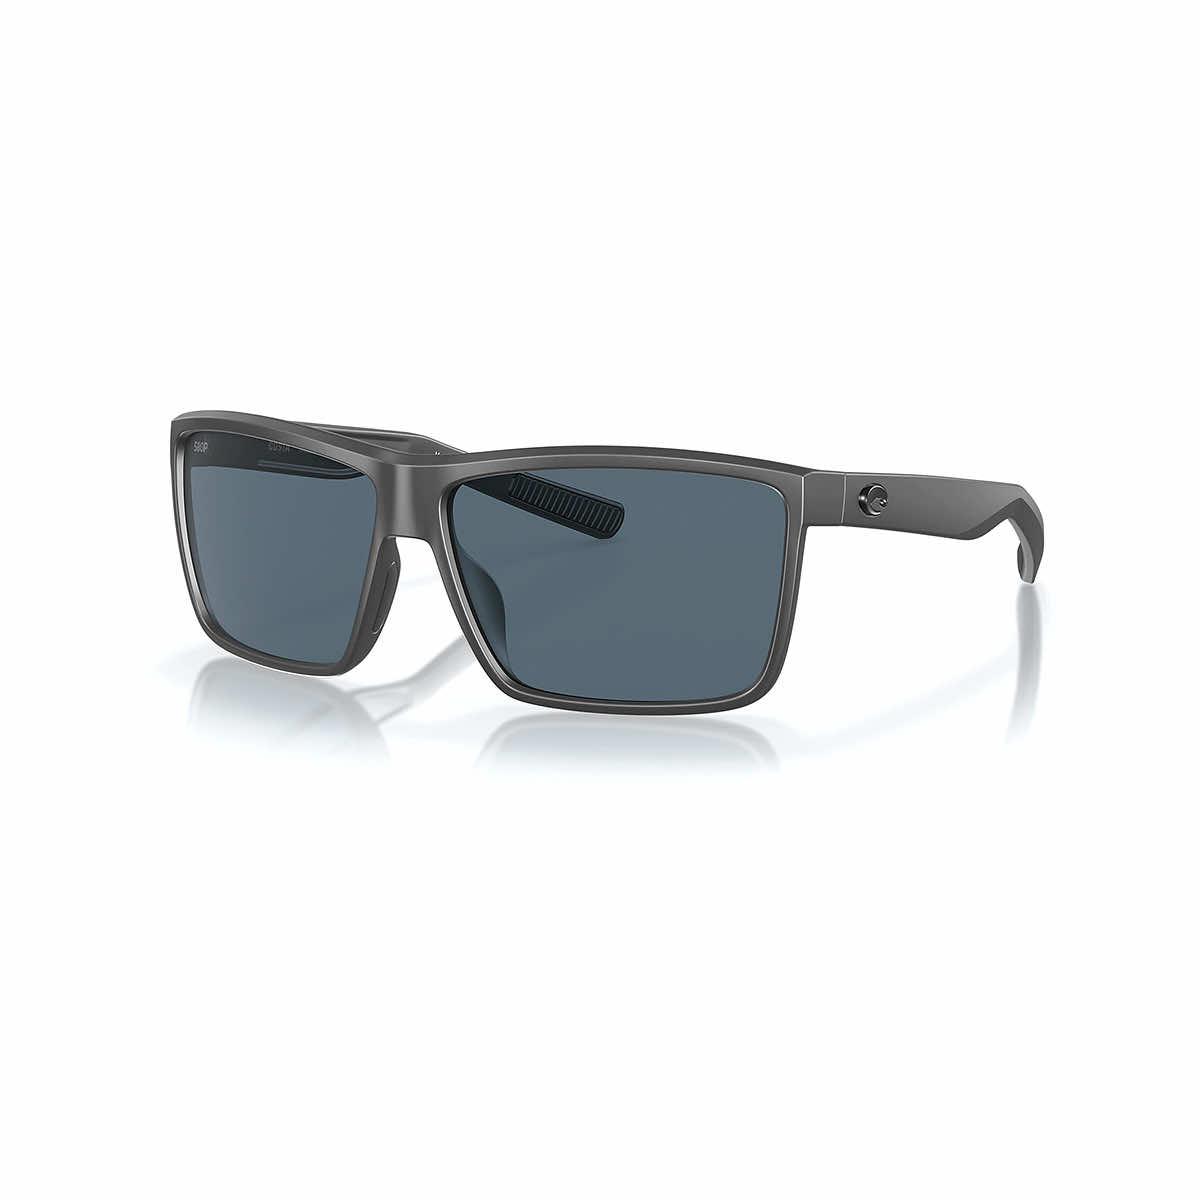  Rinconcito Sunglasses - Polarized